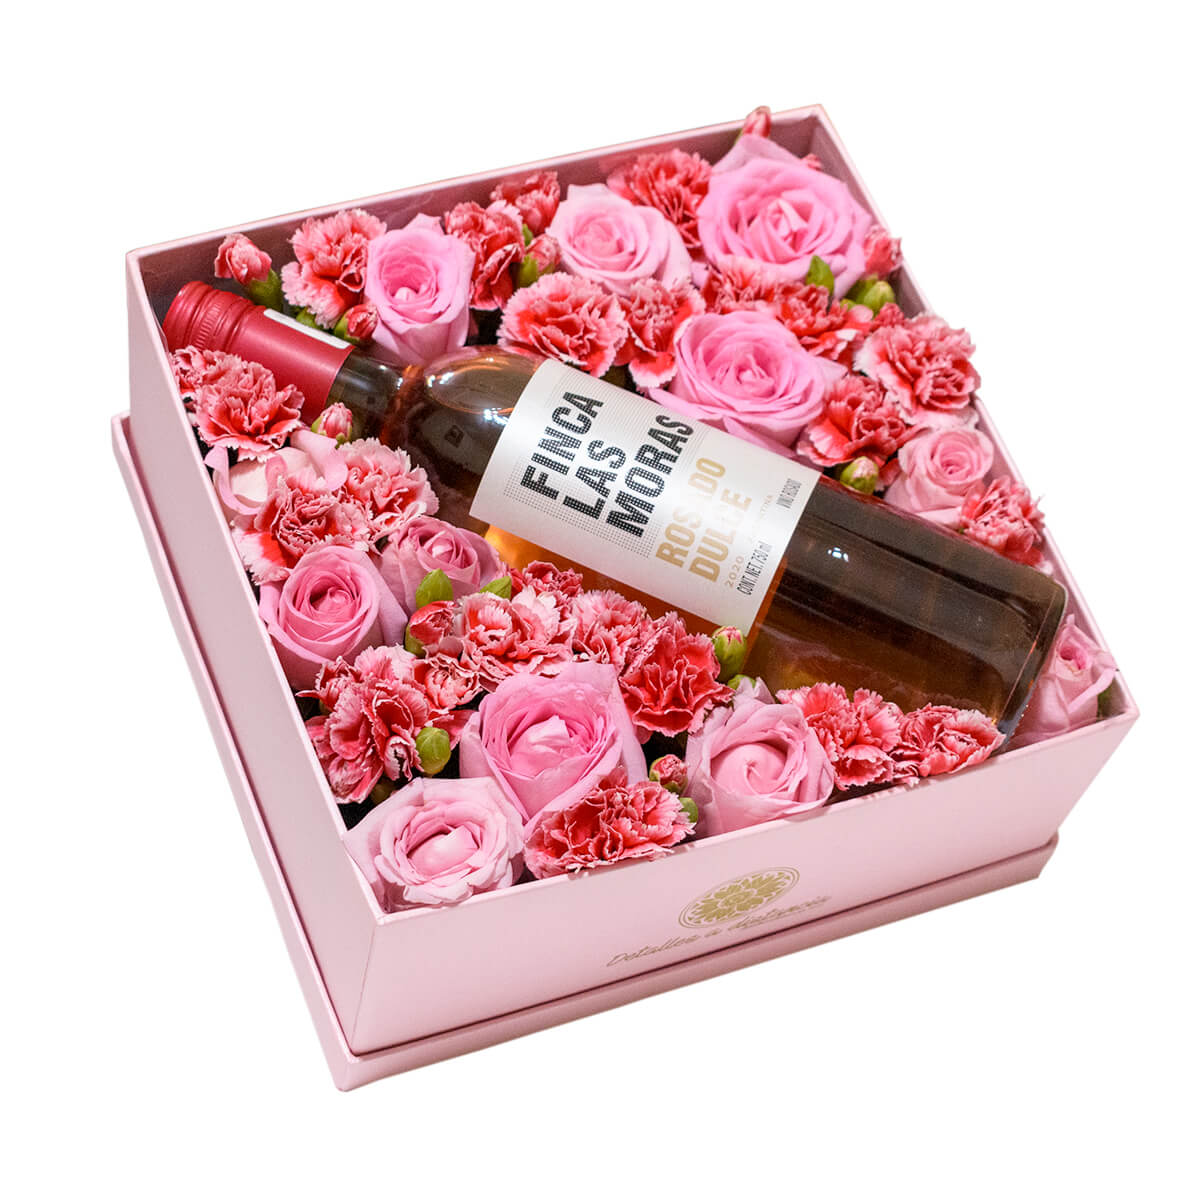 Caja de flores con Finca las moras rosado